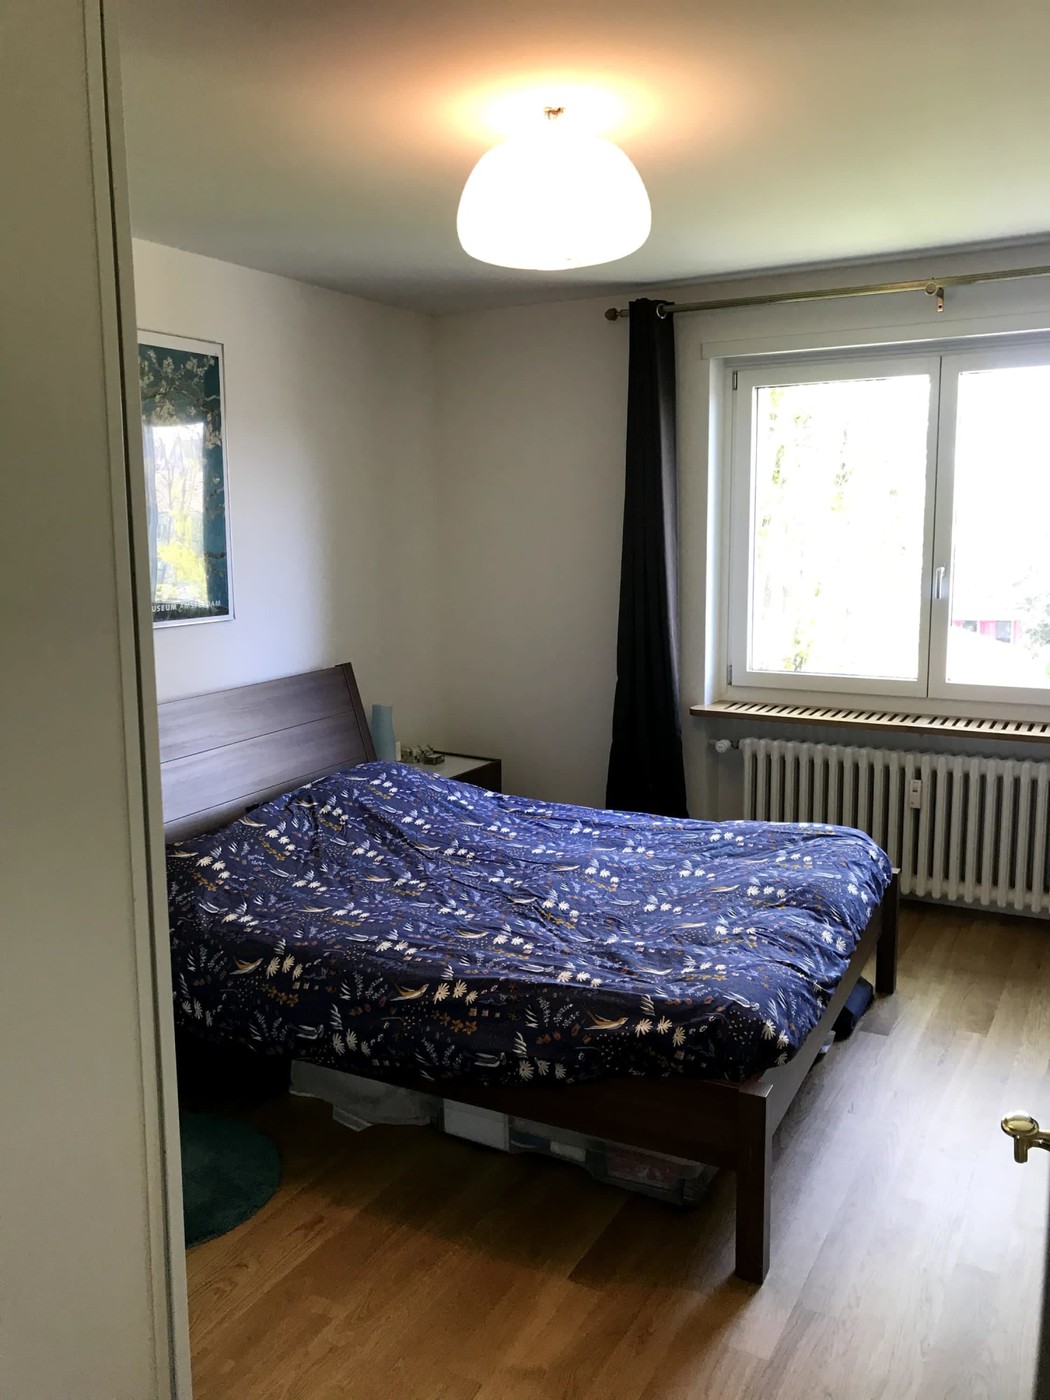 2 Zimmer-Wohnung in Basel mieten - Flatfox